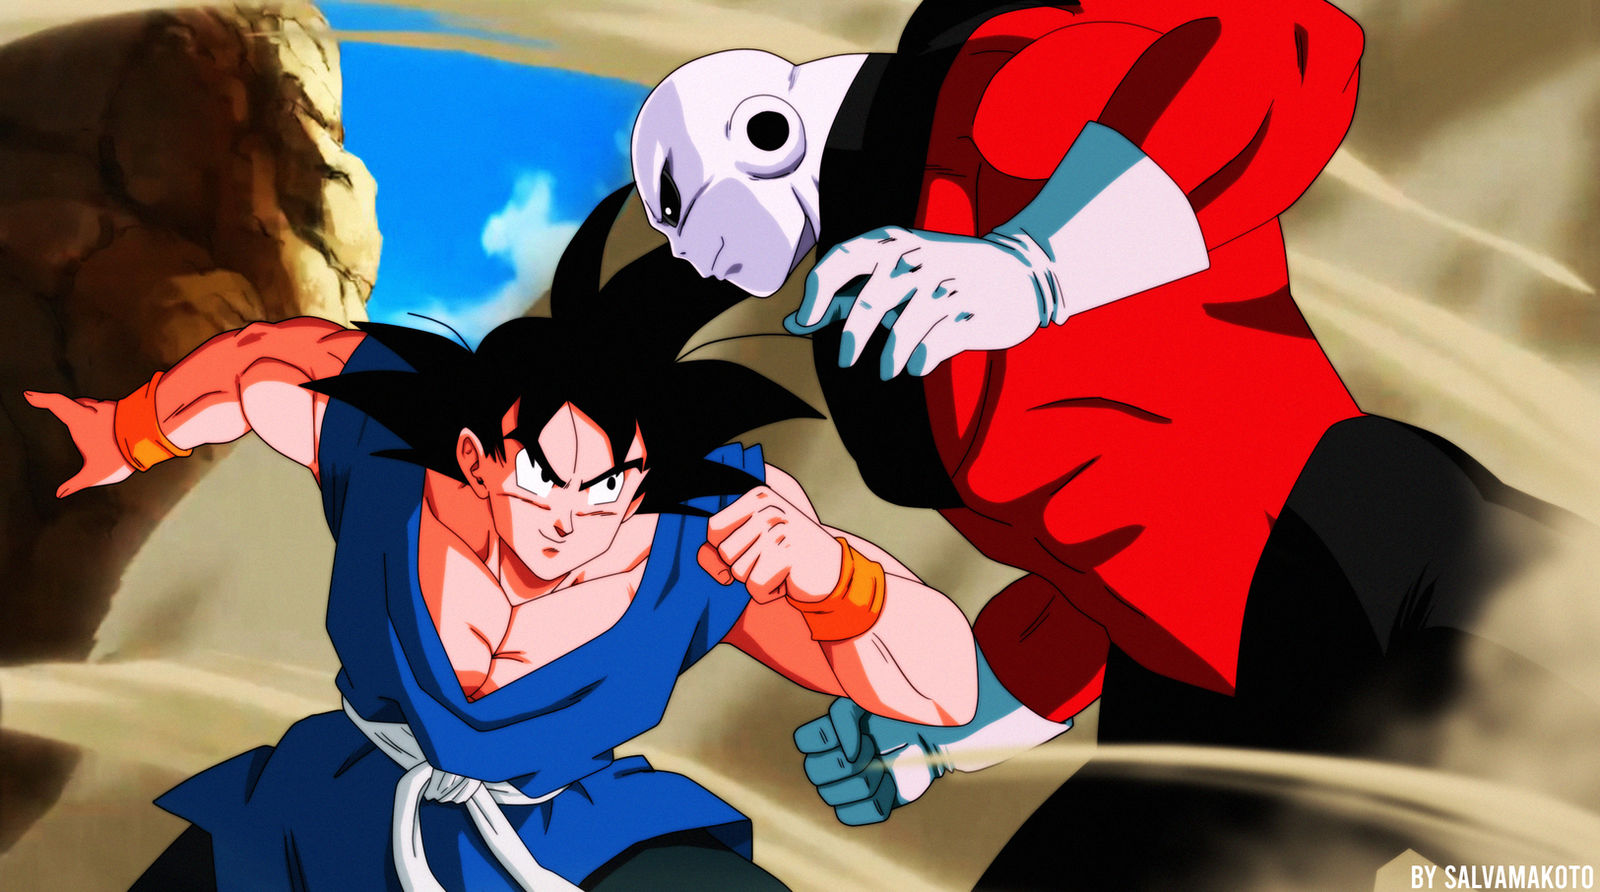 Goku vs Jiren by salvamakoto on DeviantArt